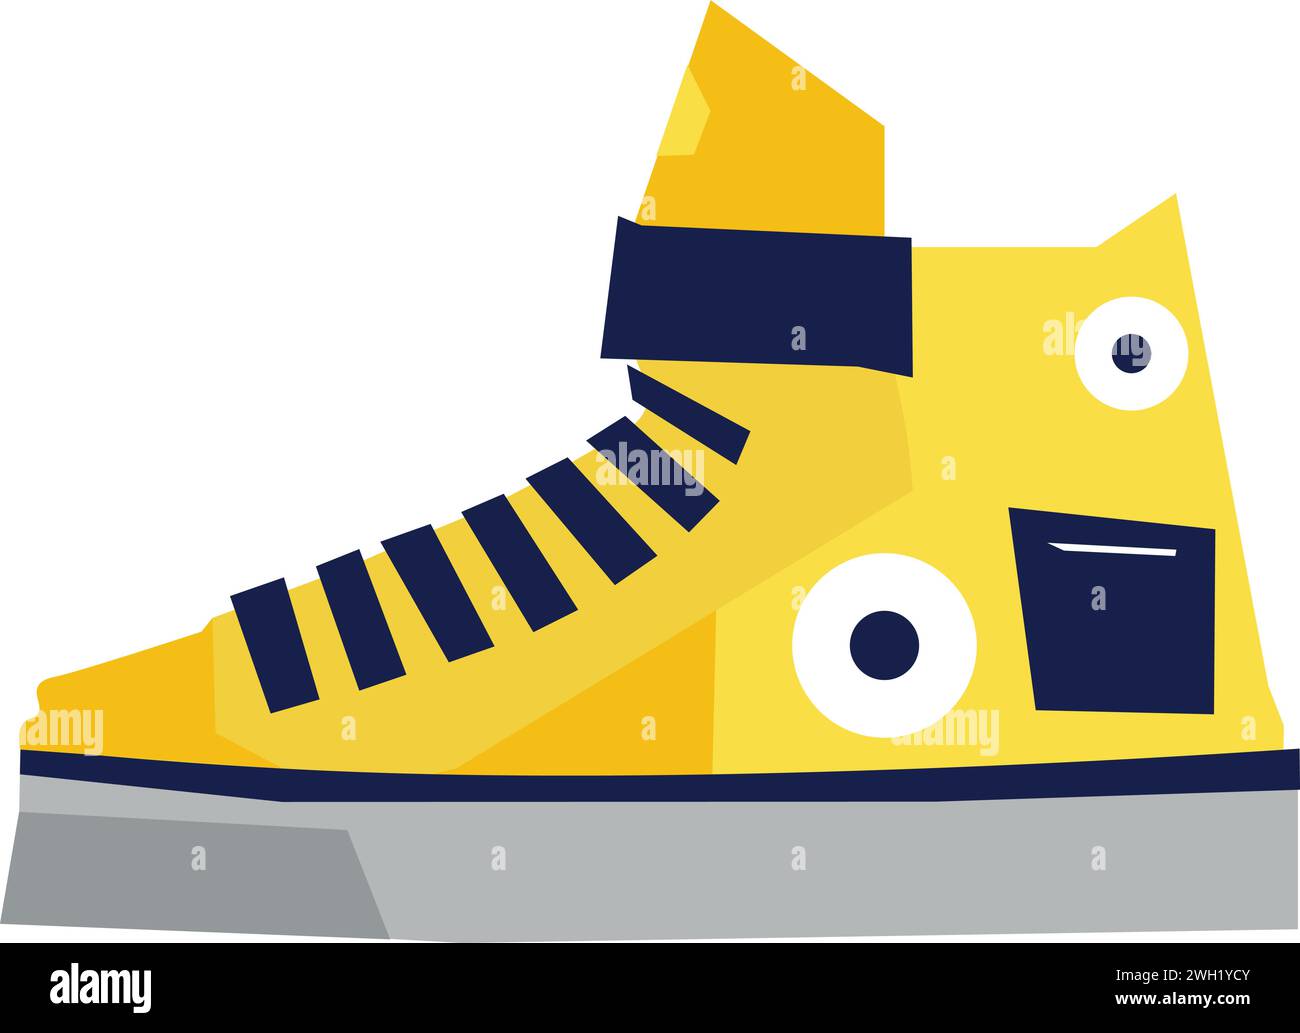 Heben Sie Ihre Designs mit dem gelben Sneaker-Symbol auf – einem Symbol für Stil und Komfort. Perfekt für Mode, Fitness und moderne Ästhetik. Stock Vektor